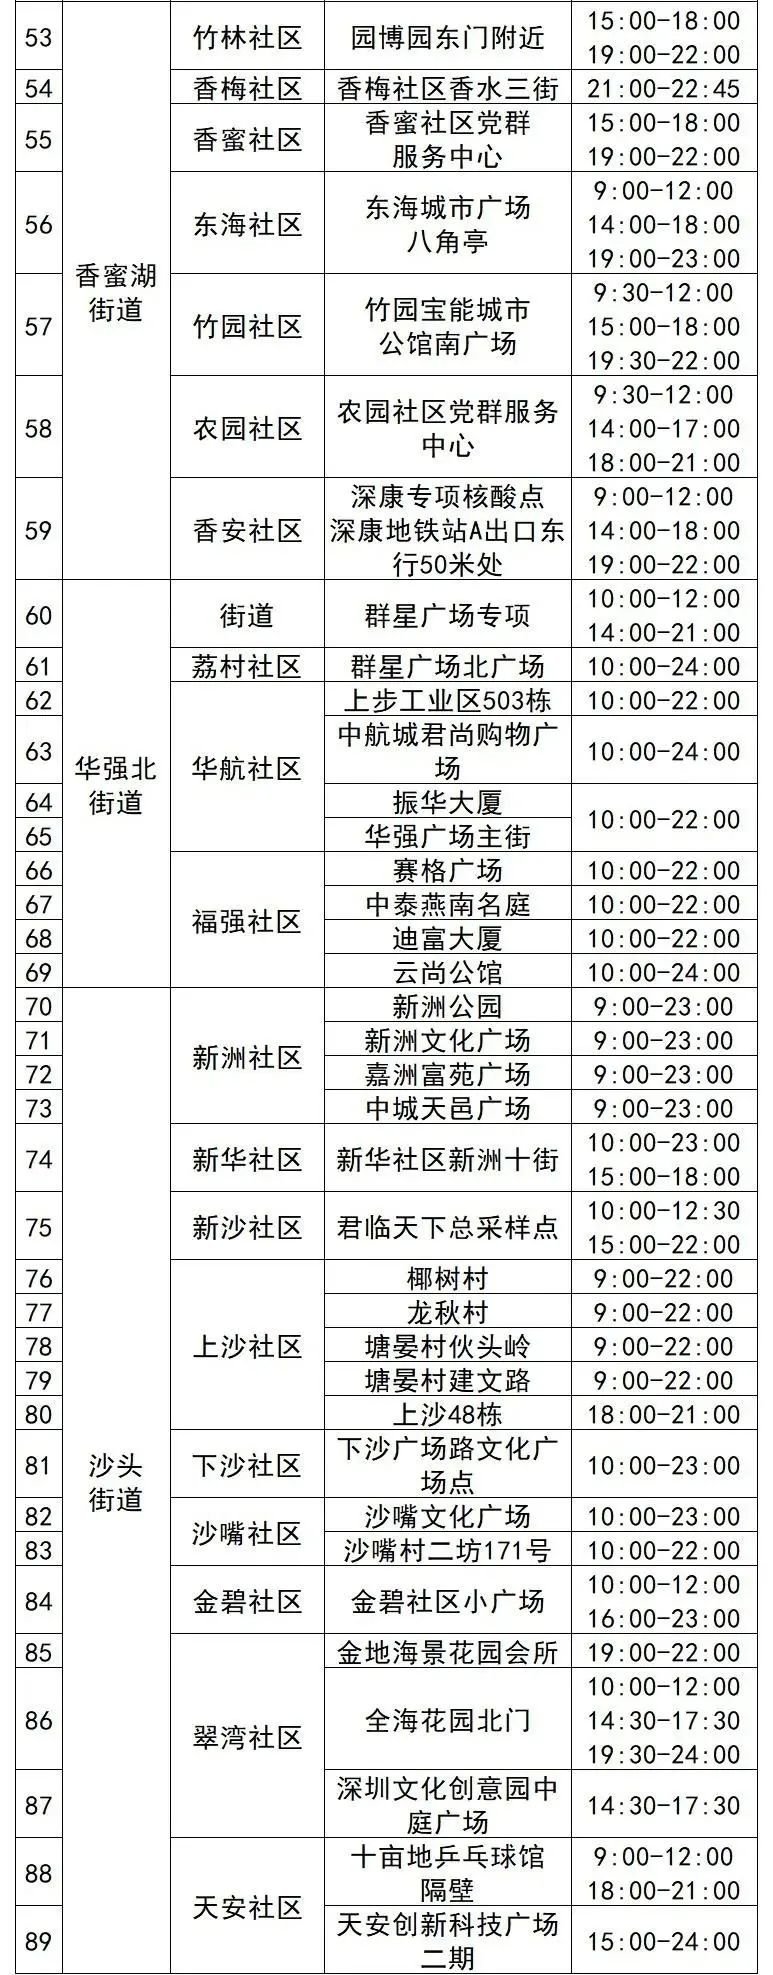 7月4日福田区核酸采样点名单